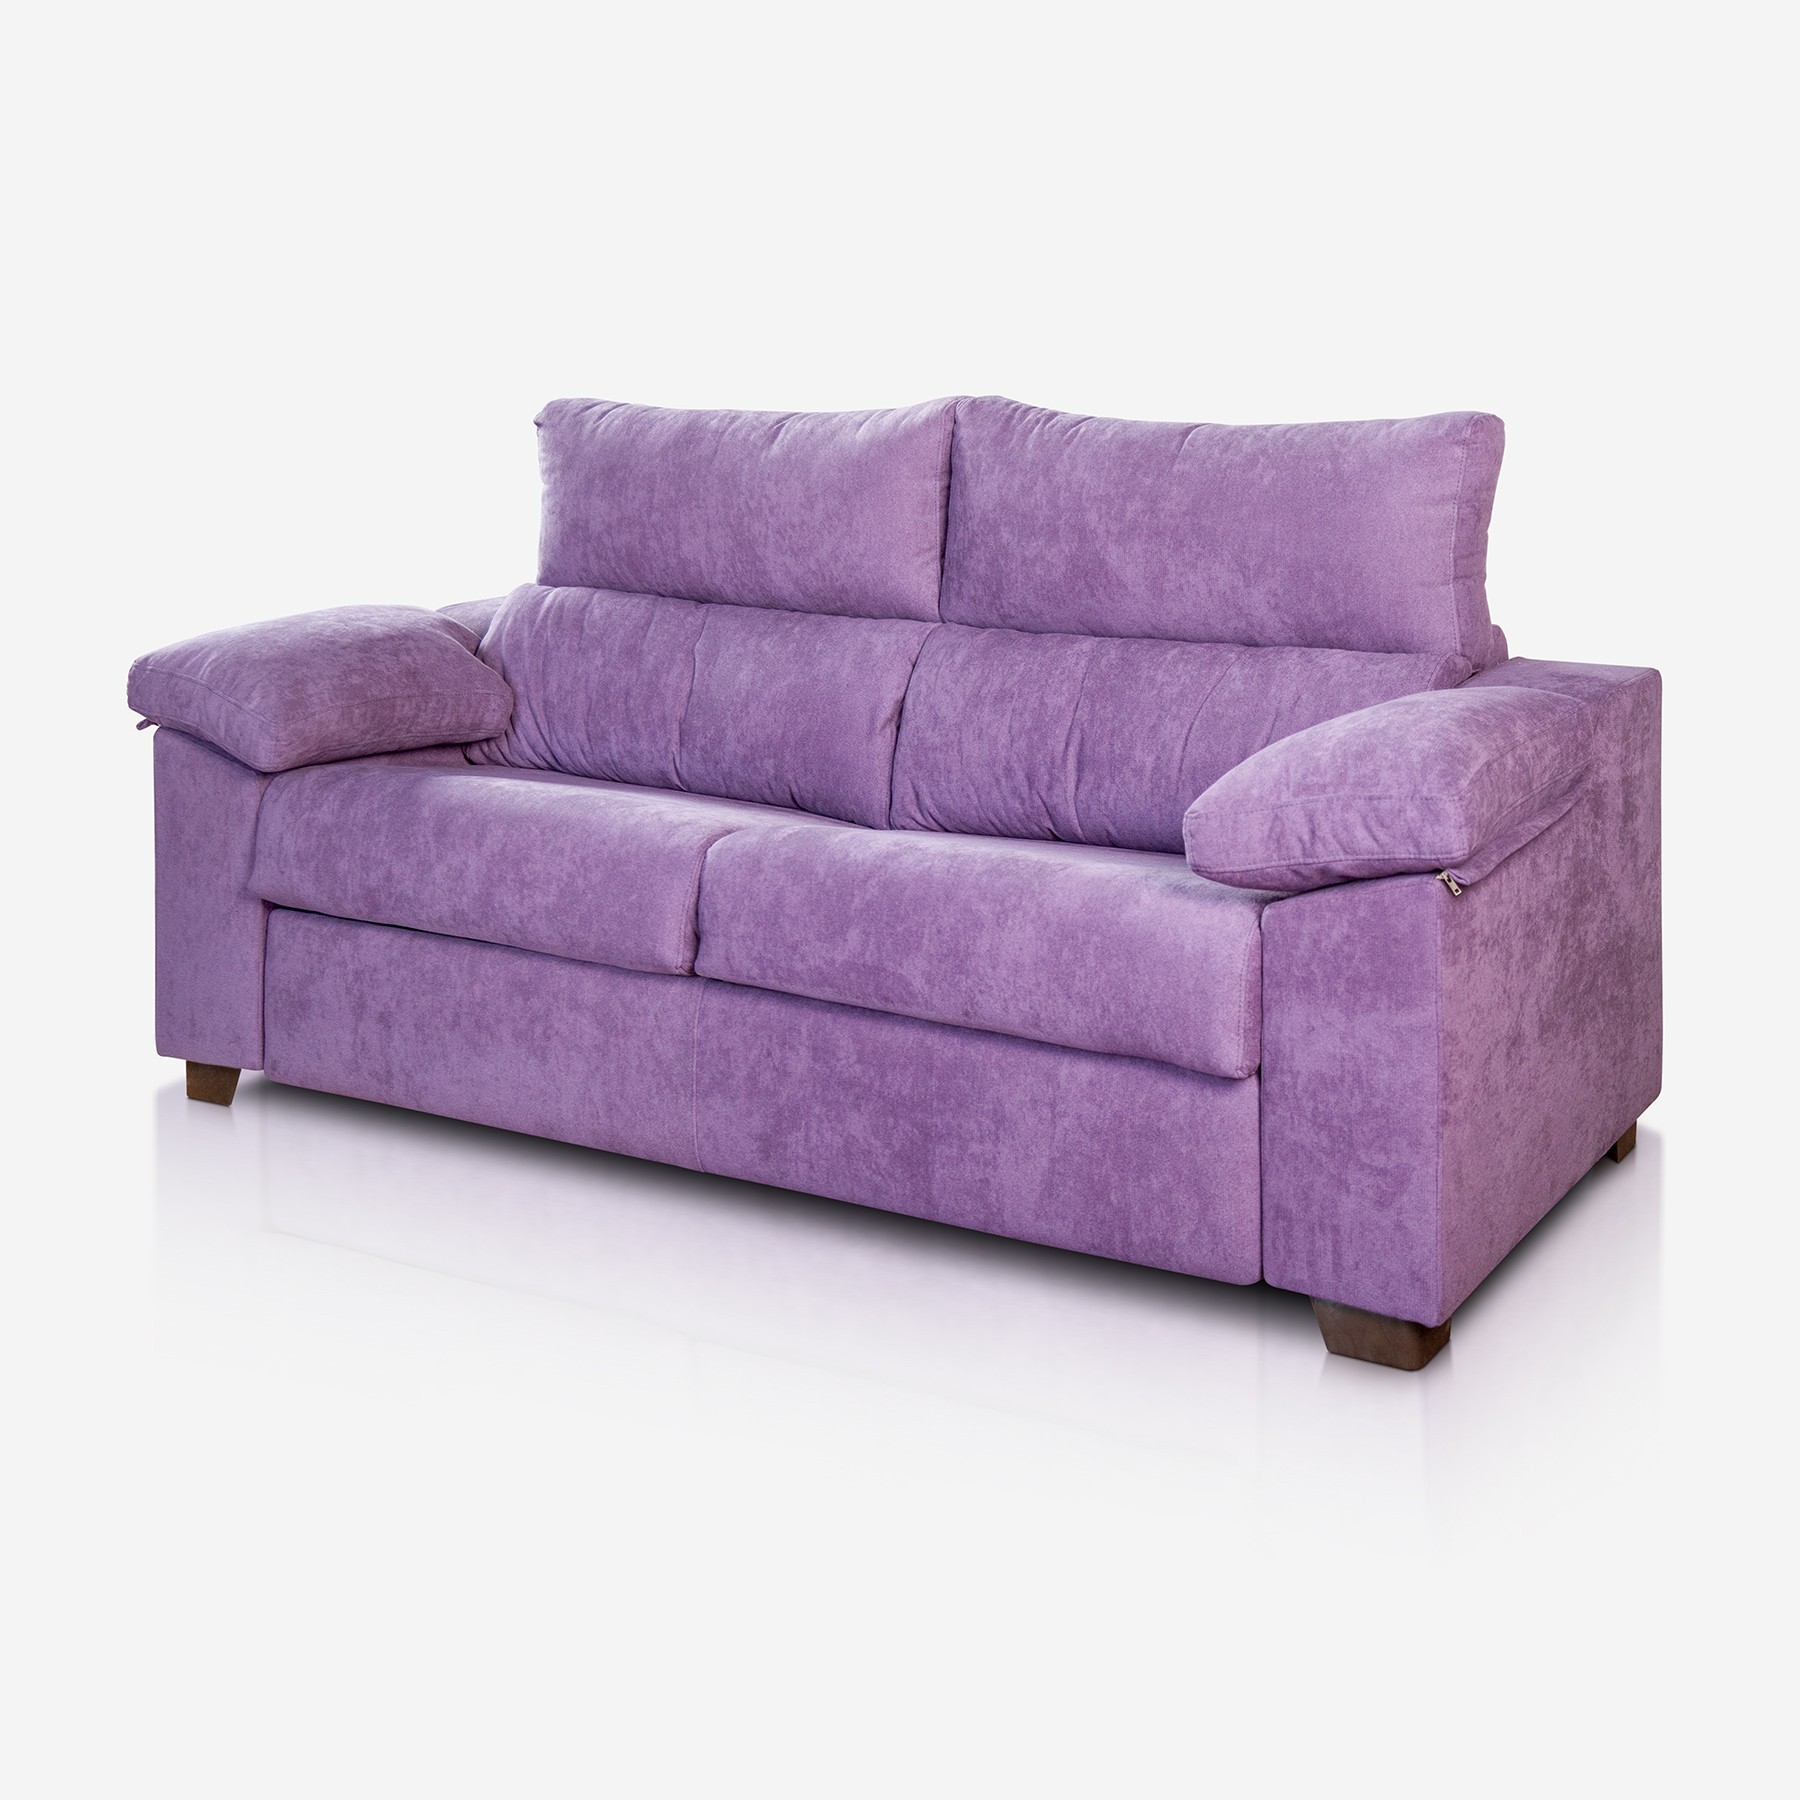 Consejos para limpiar un sofá con tela antimanchas - Sueños ZZZ - Blog